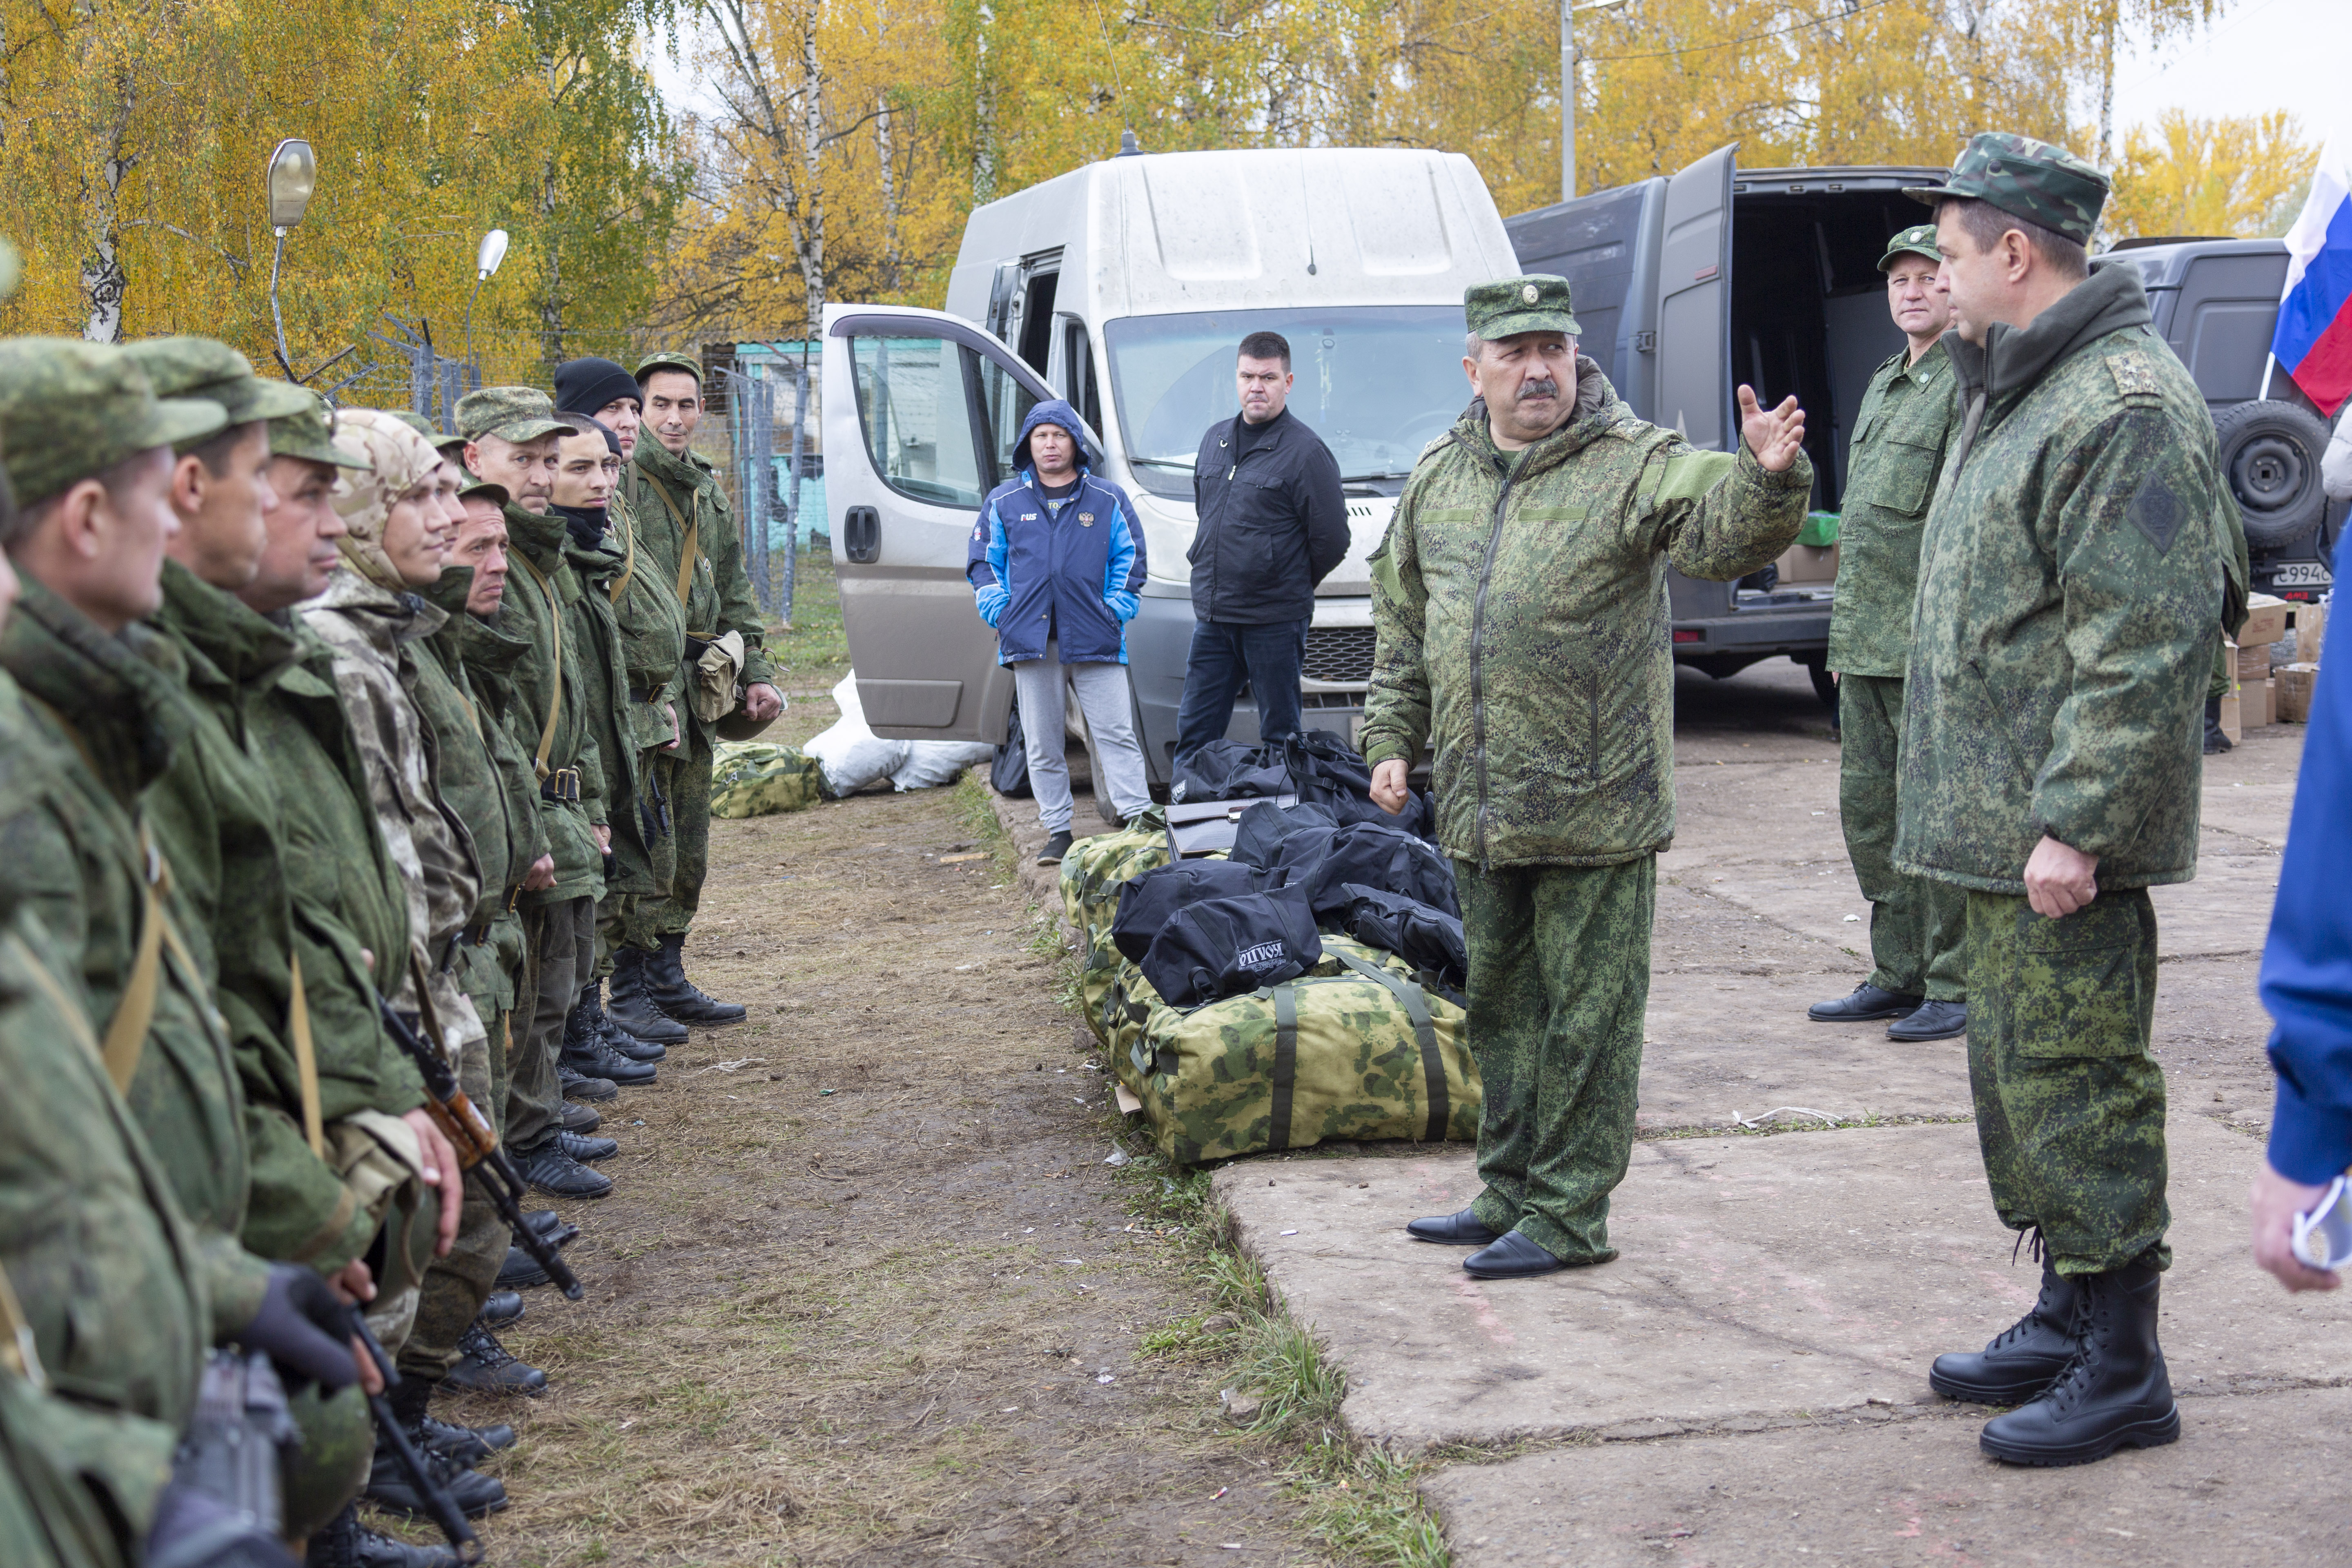 «КАМАЗ» обеспечил мобилизованных сотрудников экипировочными комплектами